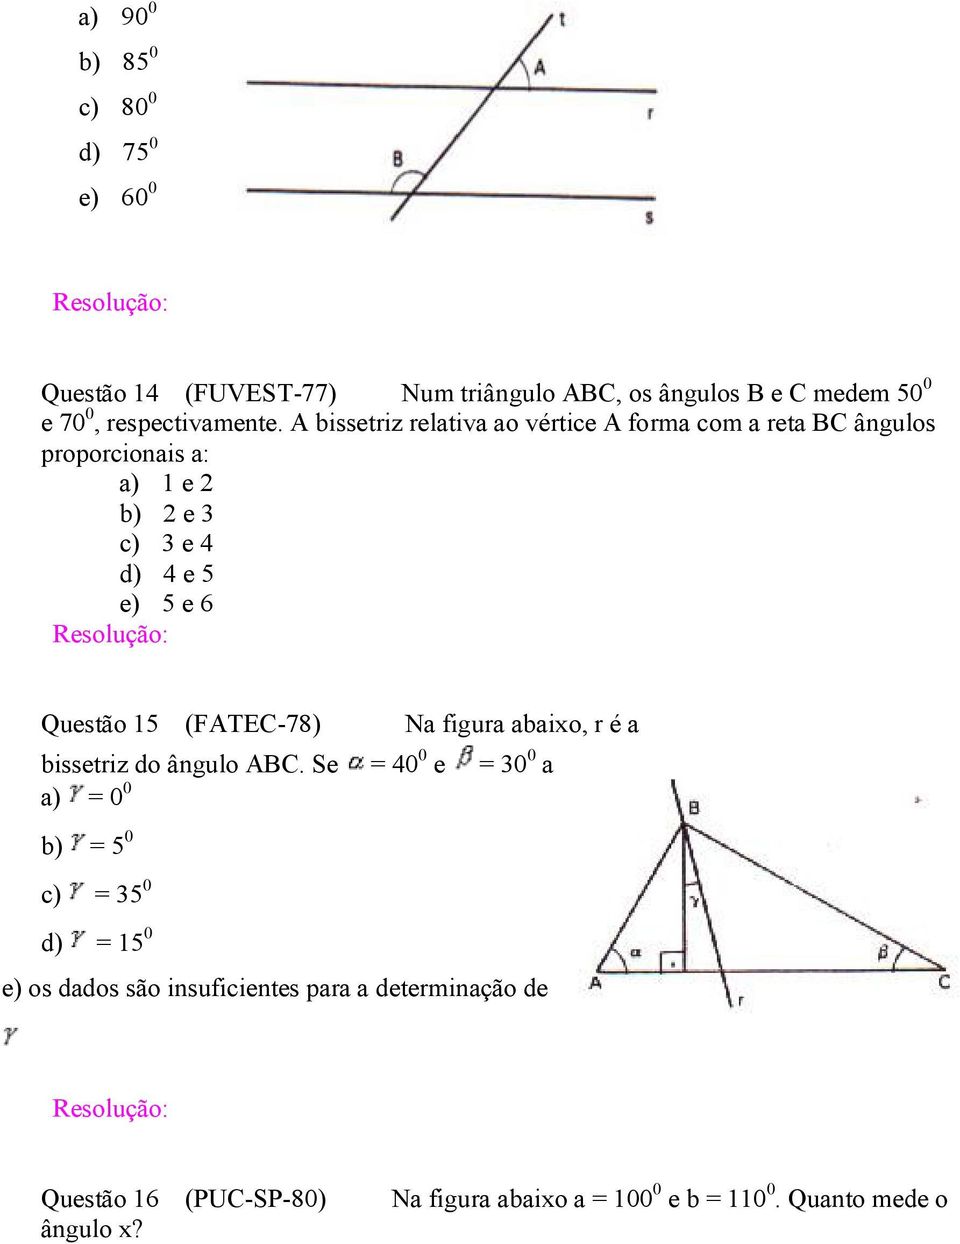 A bissetriz relativa ao vértice A forma com a reta BC ângulos proporcionais a: a) 1 e 2 b) 2 e 3 c) 3 e 4 d) 4 e 5 e) 5 e 6 Questão